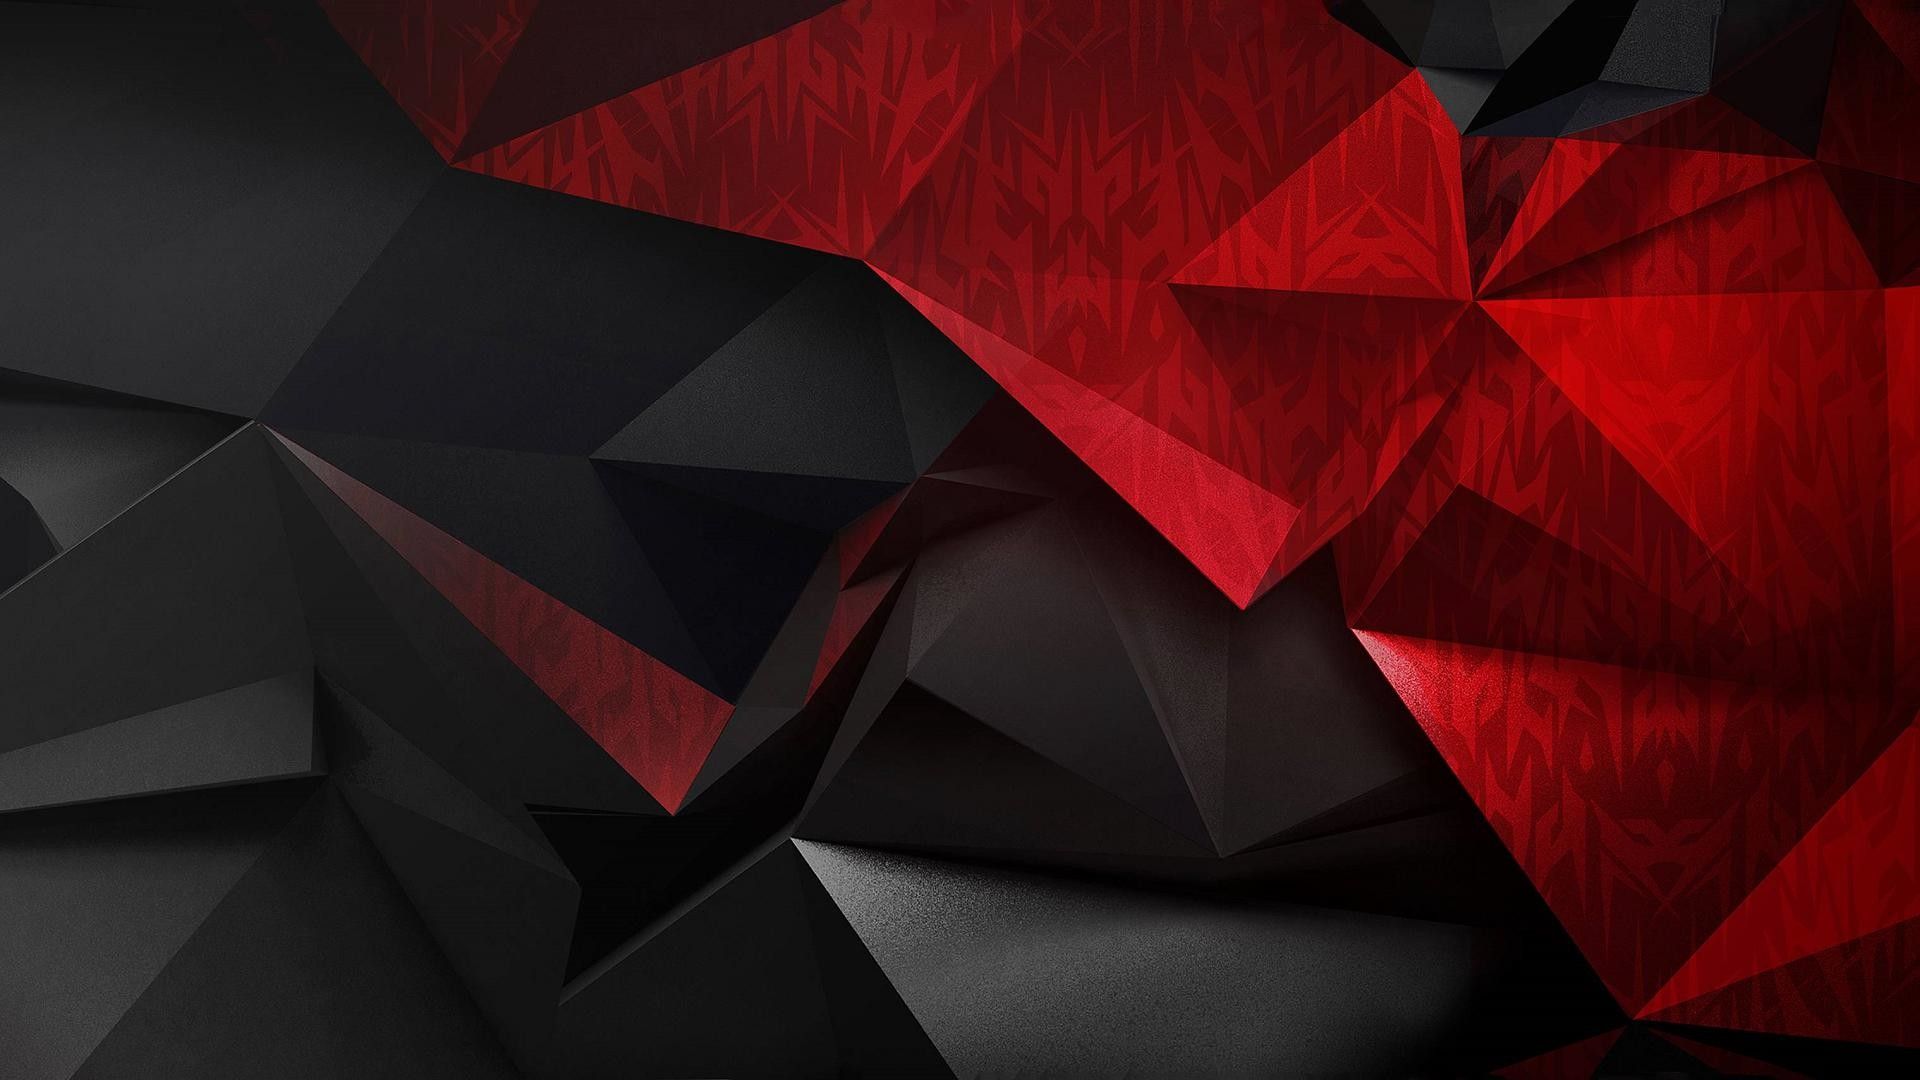 acer predator wallpaper,rot,schwarz,dreieck,muster,design